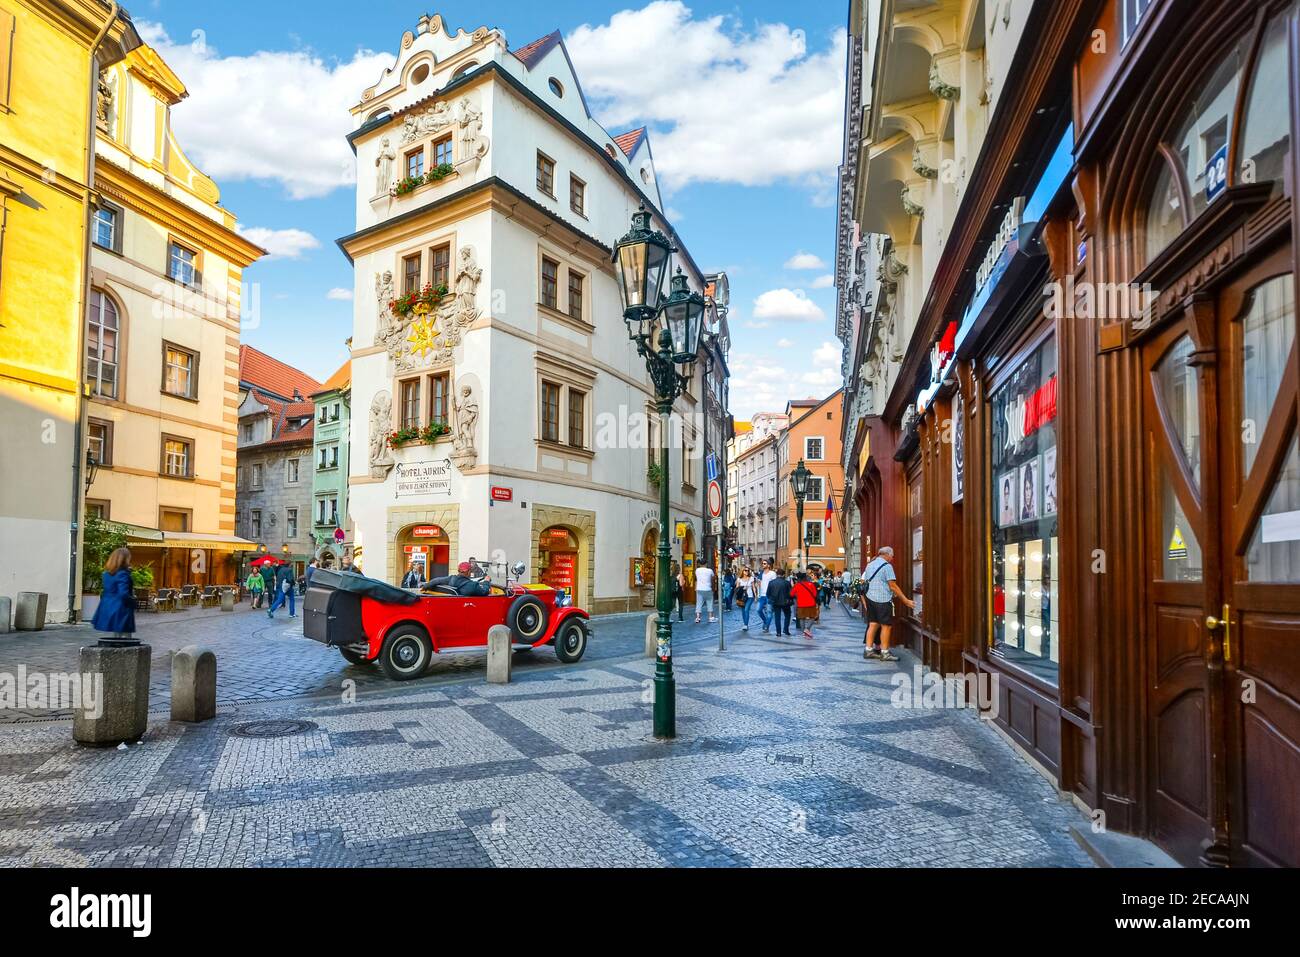 Malerische Aussicht auf einen touristischen Teil der Altstadt von Prag, Tschechien, mit Oldtimer, gepflasterten Straßen und malerischen Geschäften und Hotels Stockfoto